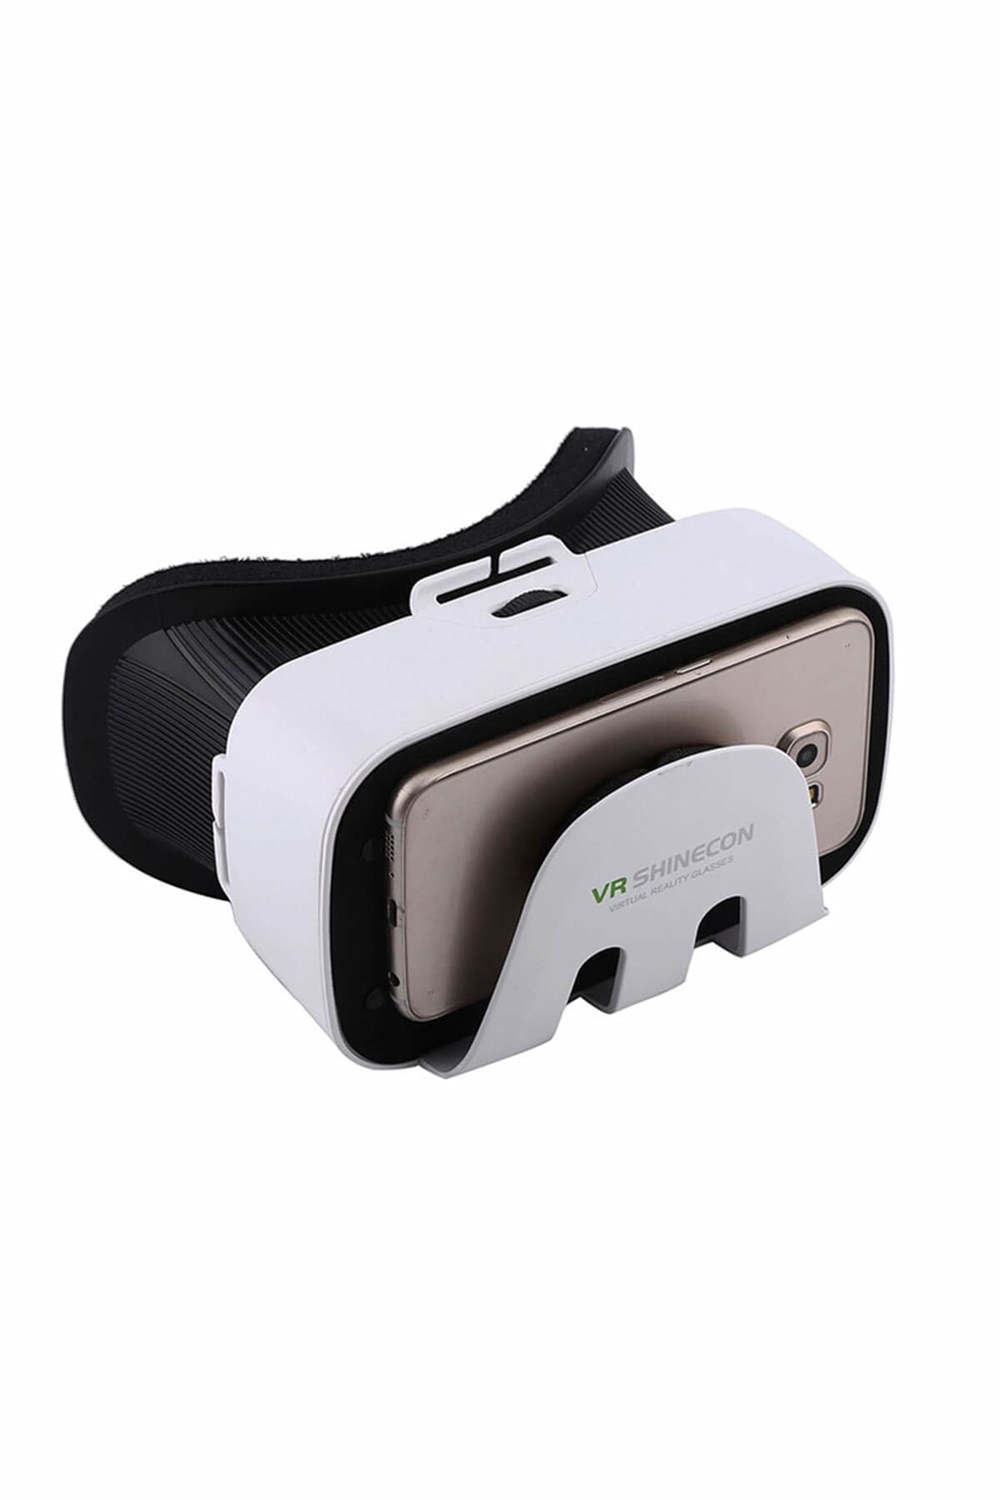 VR Shinecon 3D Sanal Gerçeklik Gözlüğü - Önü Açık Sağa Sola Ayarlanabilir  Mercek (4.7" - 6.5") | Esepetim.com